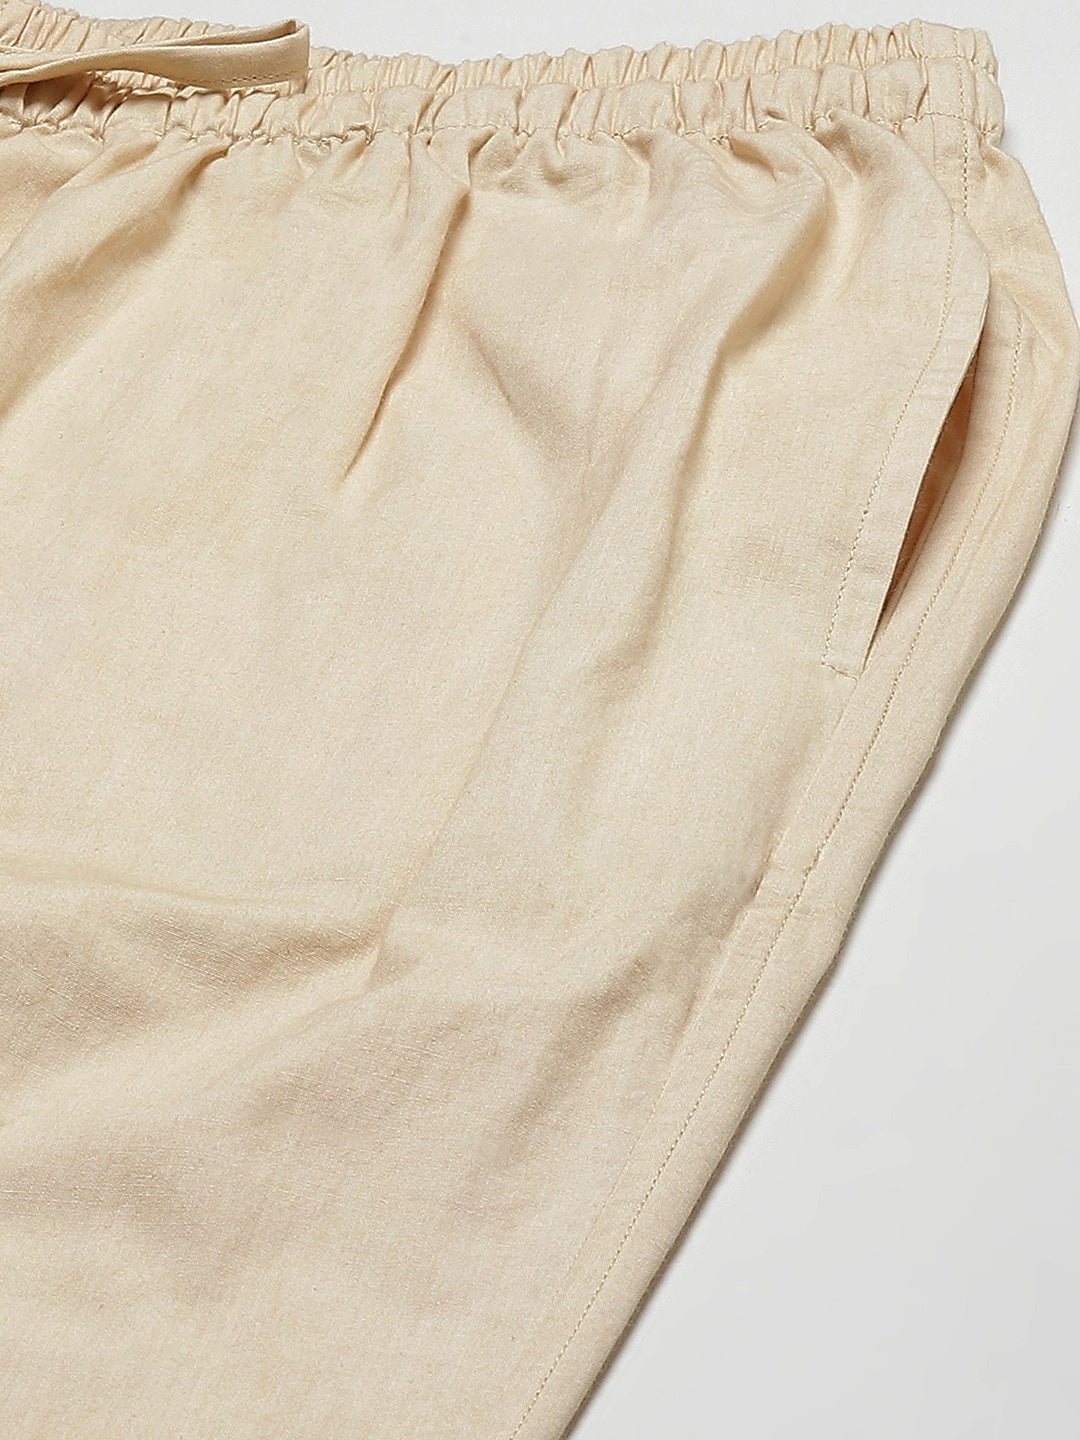 Combo Pack of 2: Brown & Beige Solid Cotton Pyjamas